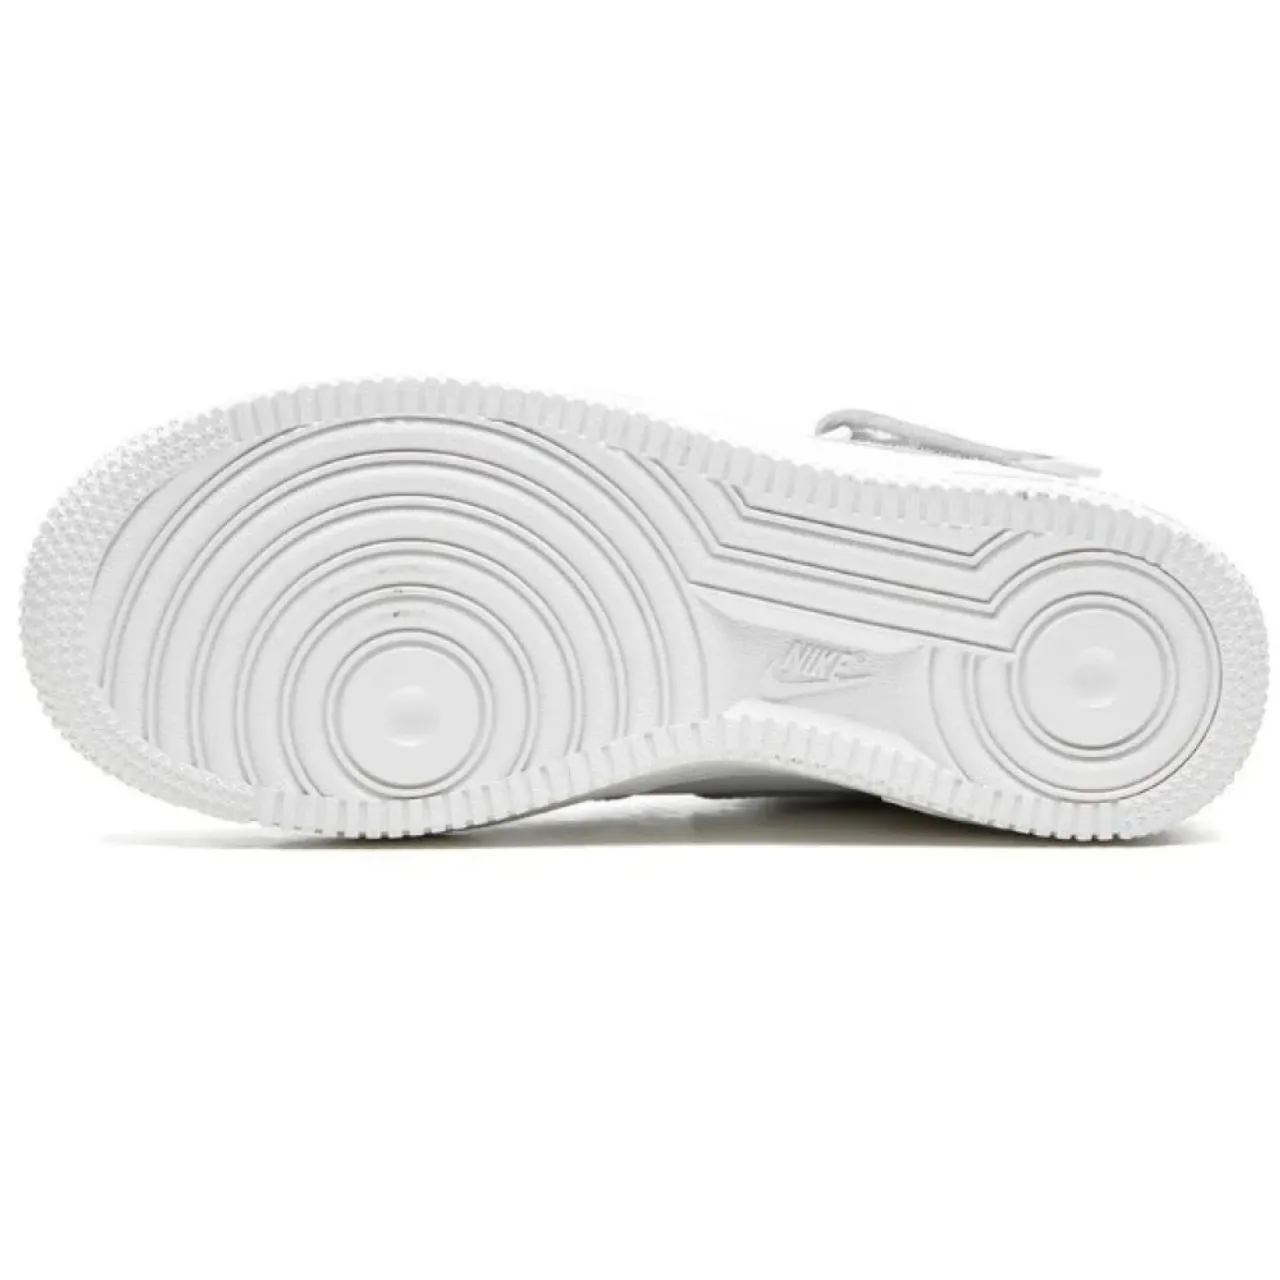 Weiße Sneakers im Basketballstil Nike